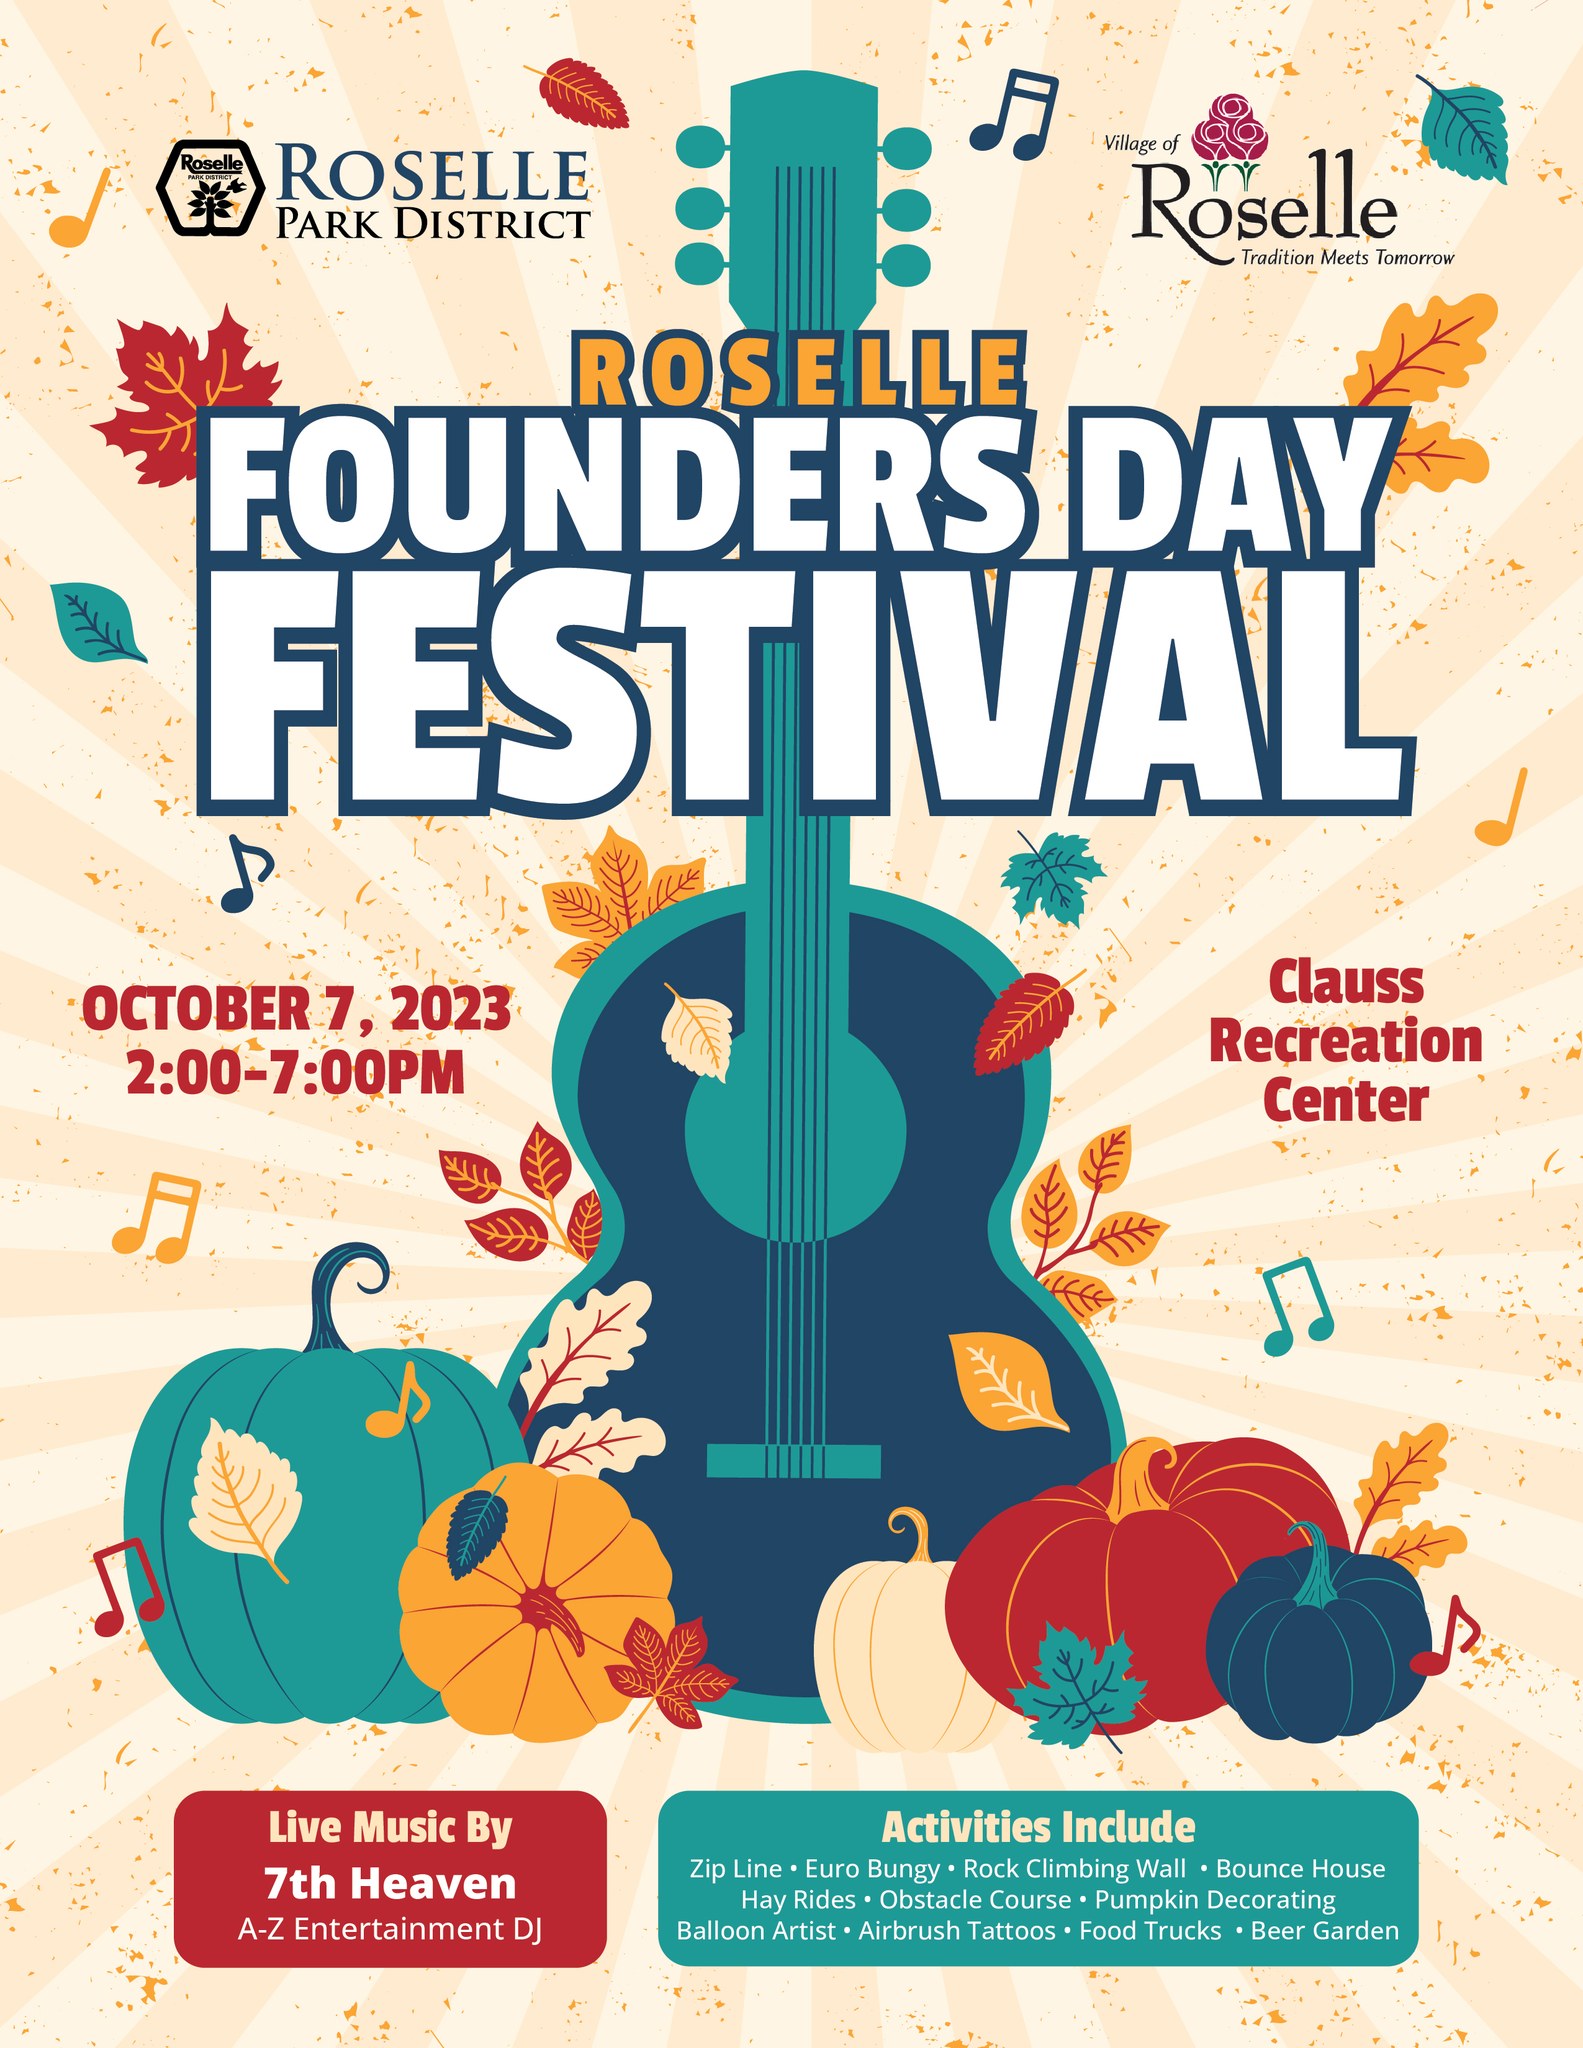 Roselle Founder's Day festival October 7